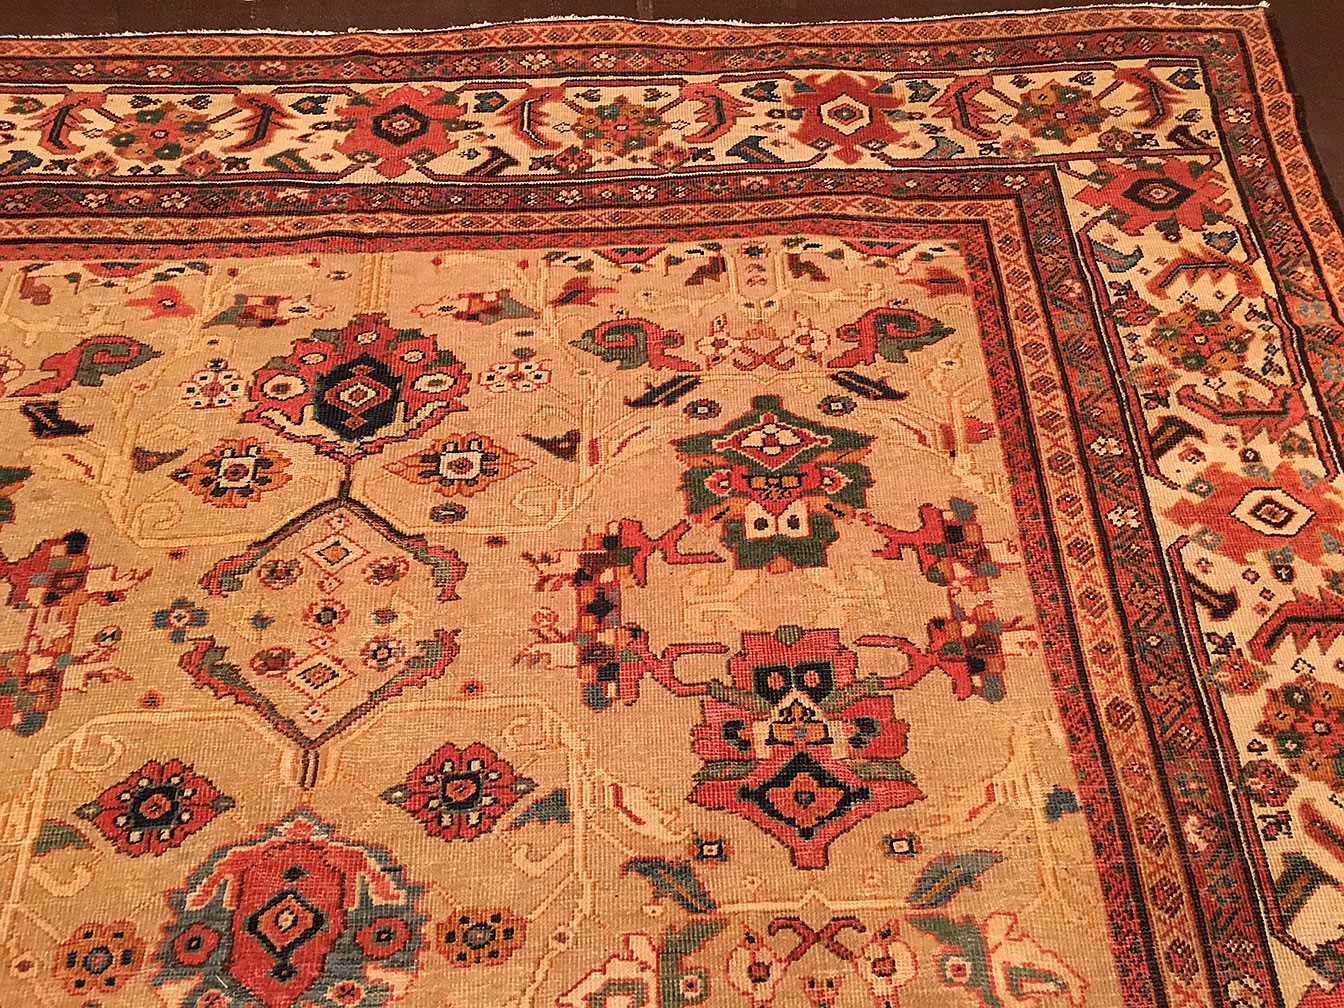 Antique sultan abad Carpet - # 51416